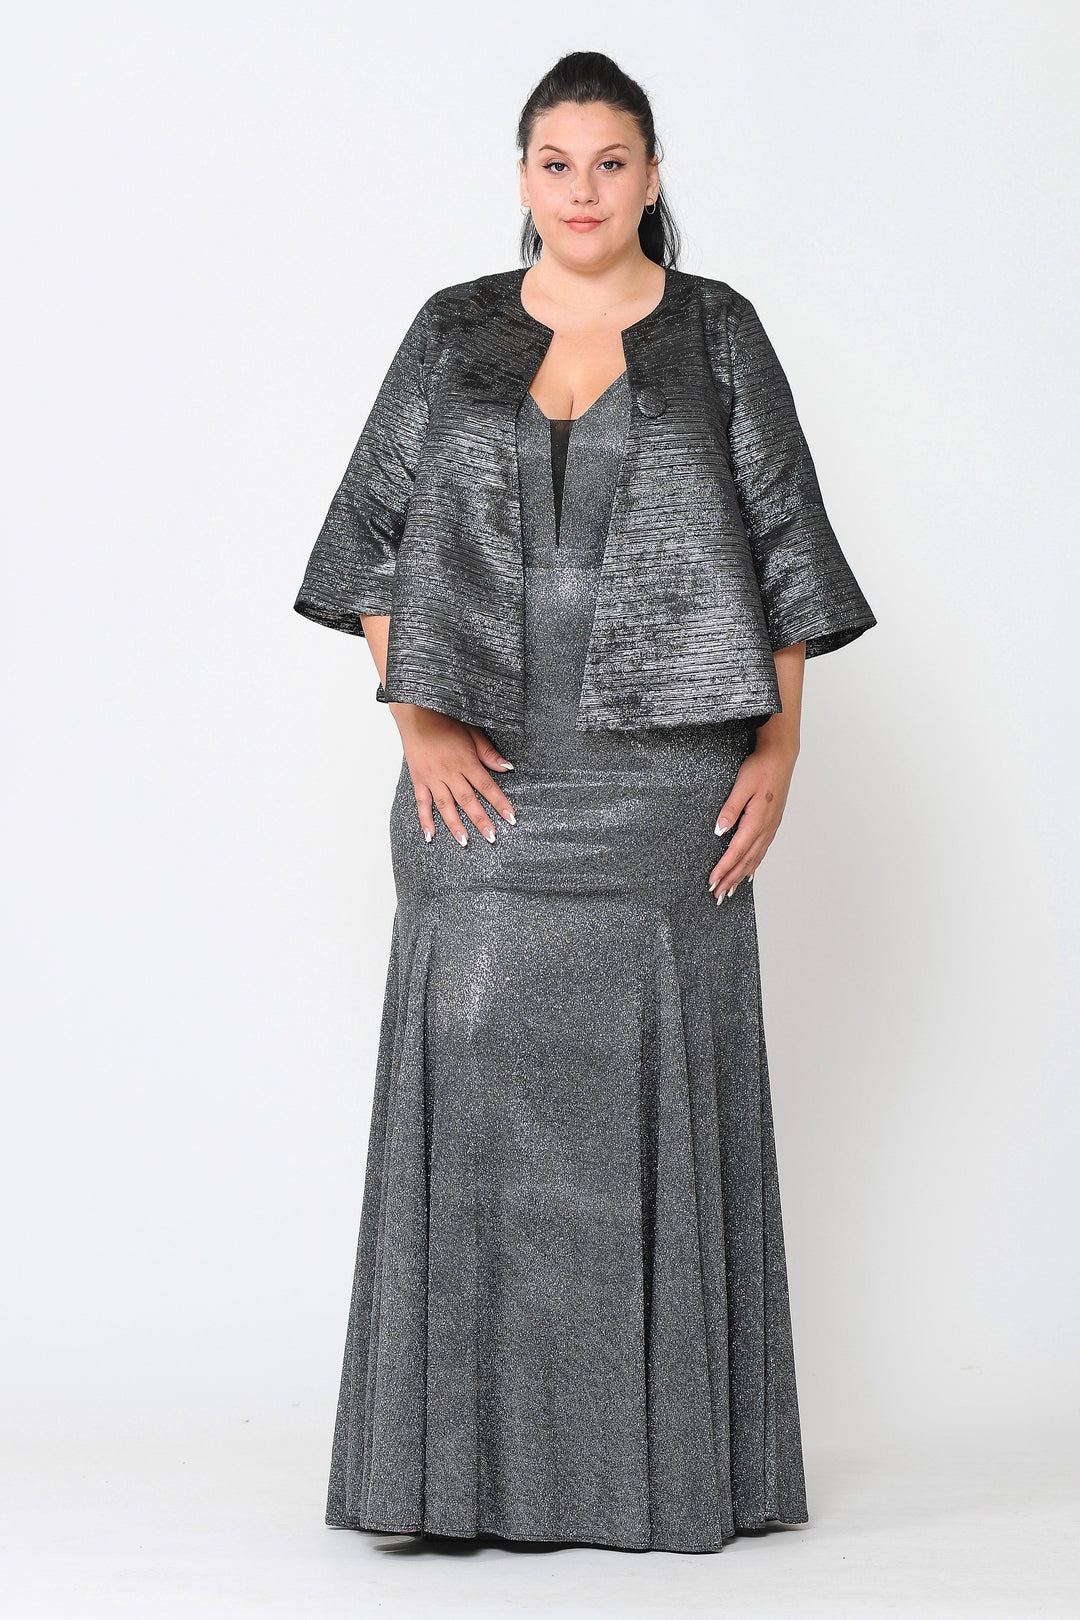 Plus Size Metallic Single Button Jacket by Poly USA JK1922-Long Formal Dresses-ABC Fashion